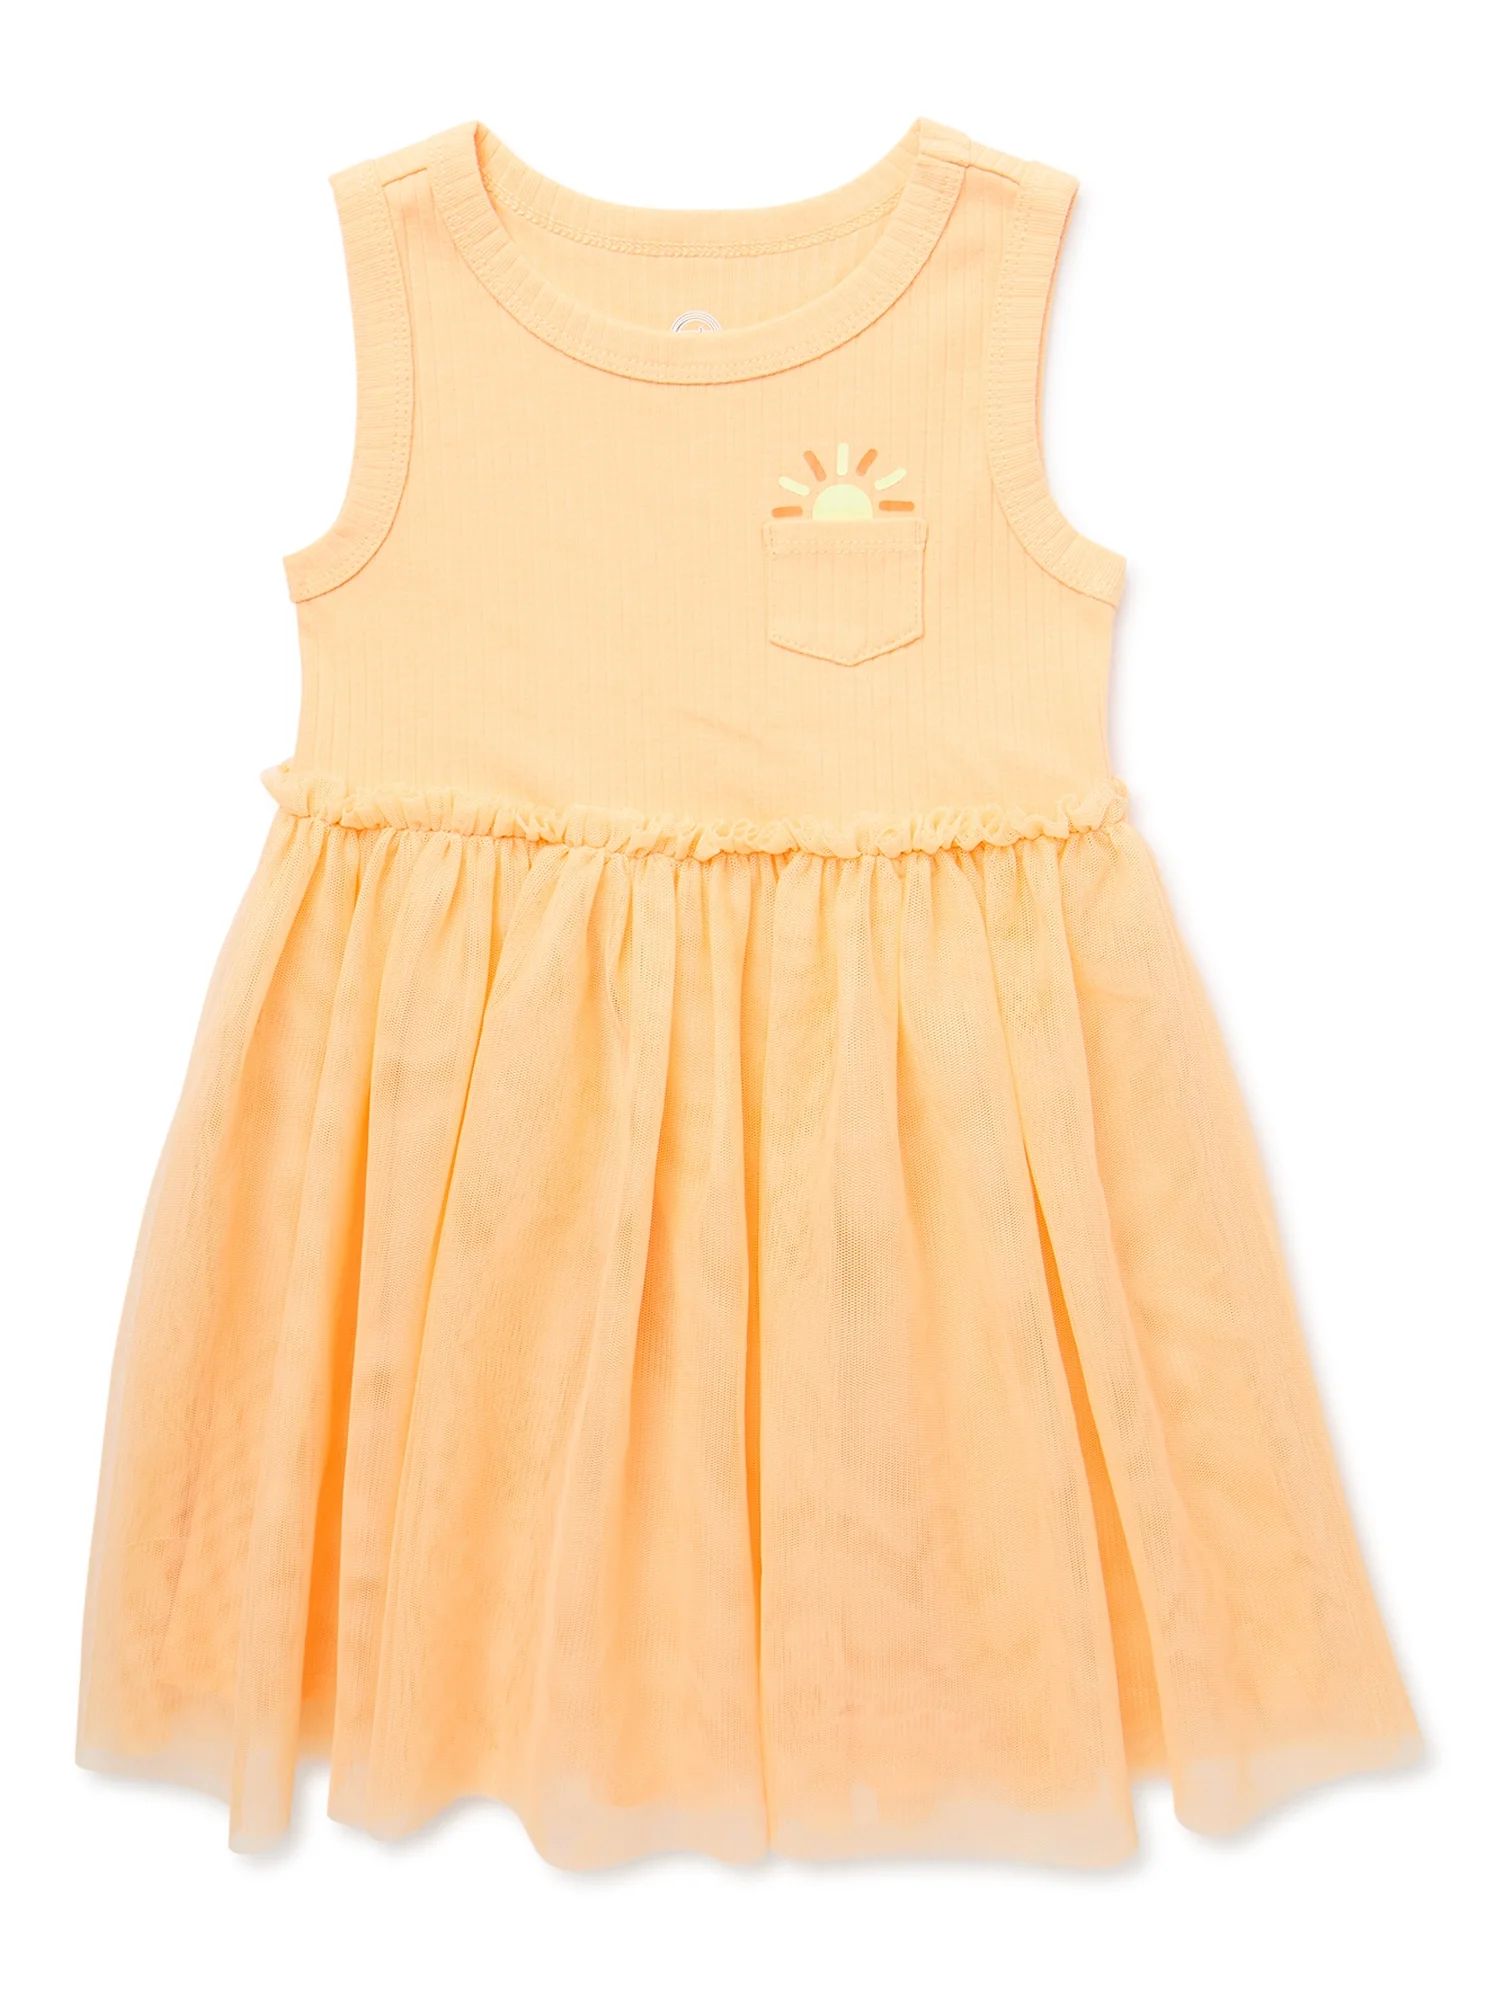 Wonder Nation Toddler Girl Tutu Tank Dress, Sizes 12M-5T | Walmart (US)